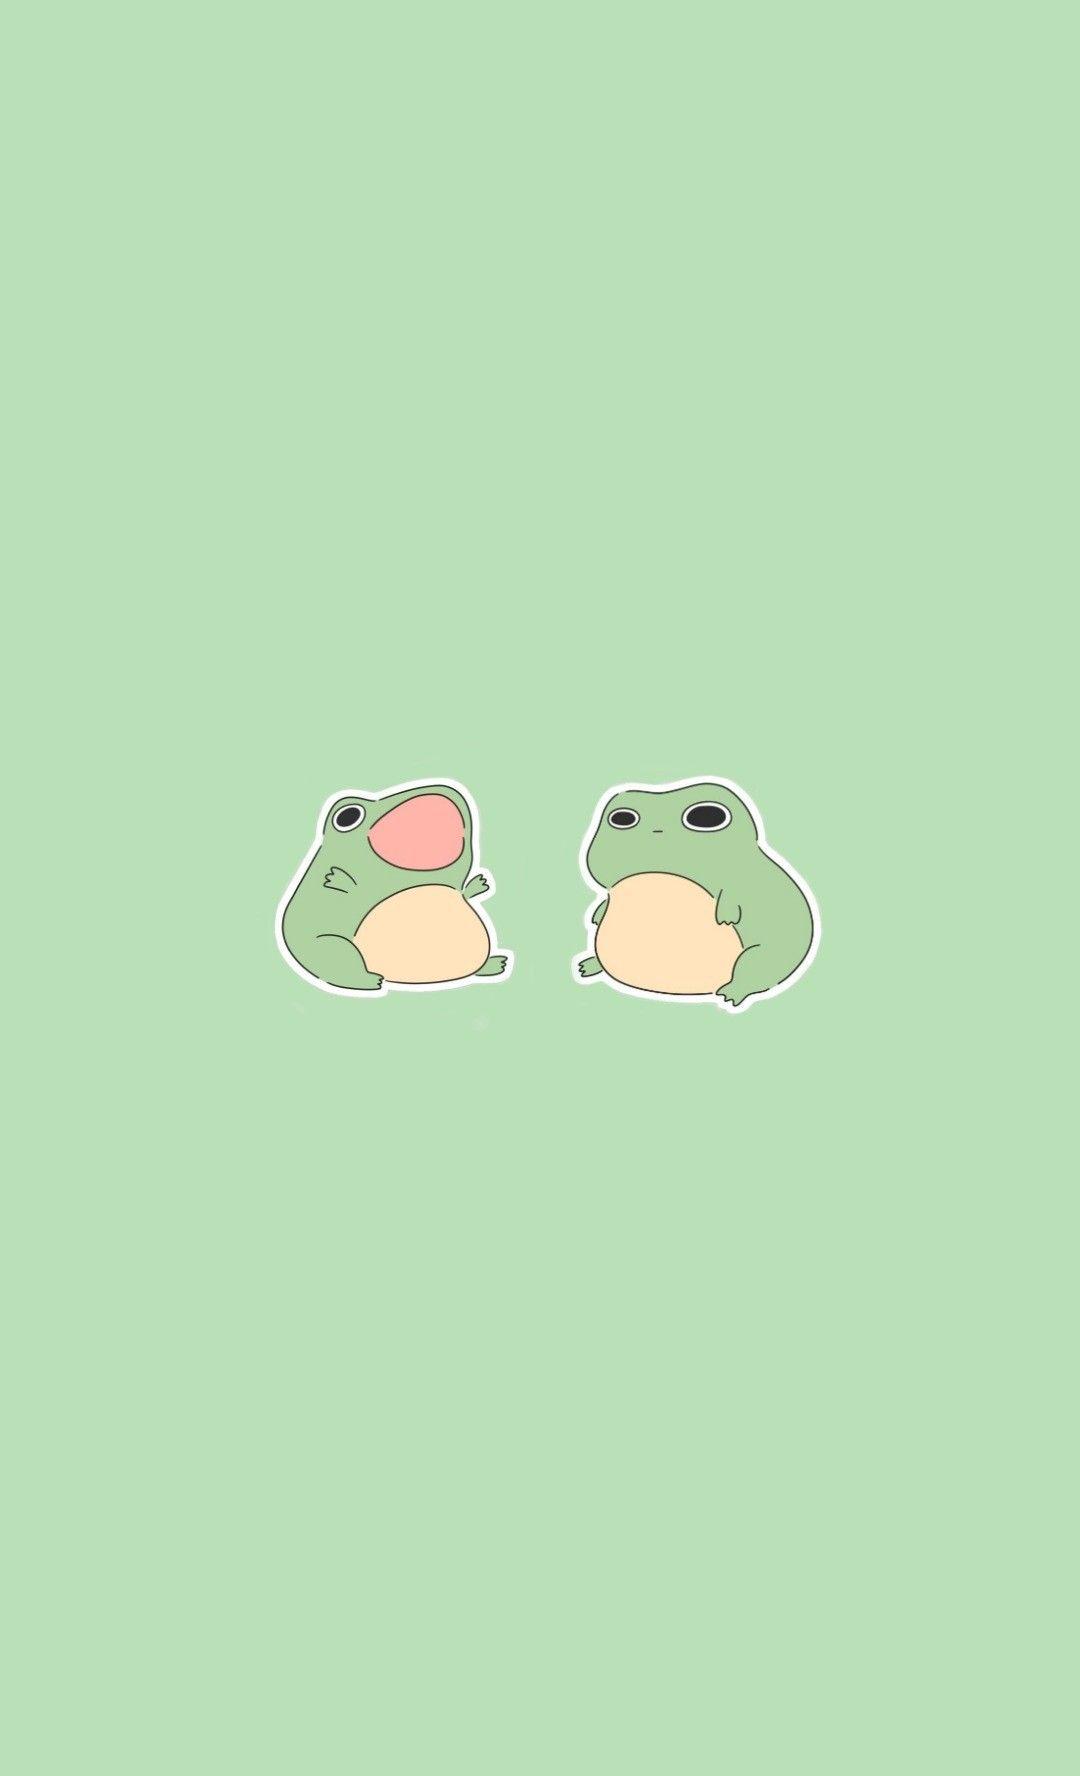 24 Cartoon Frog iPhone Wallpapers  WallpaperSafari